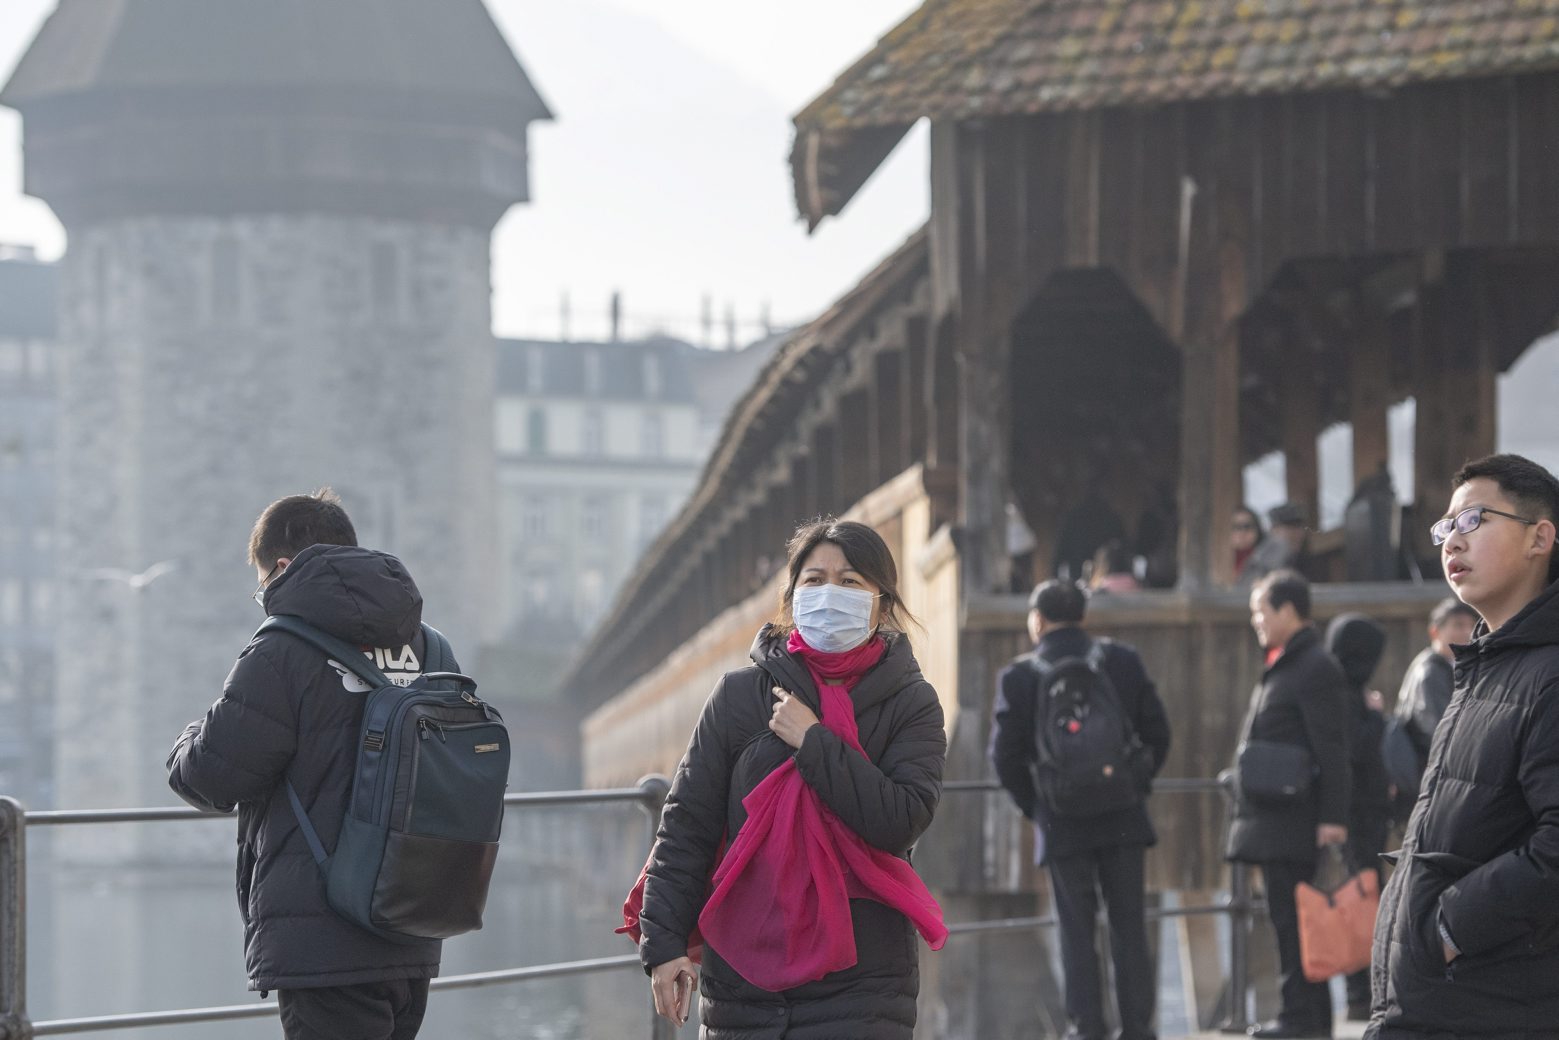 Chinesische Touristen tragen vereinzelt Schutzmasken waehrend ihres Besuches in der Stadt Luzern am Freitag, 24. Januar 2020. (KEYSTONE/Urs Flueeler) SCHWEIZ TOURISTEN CHINA